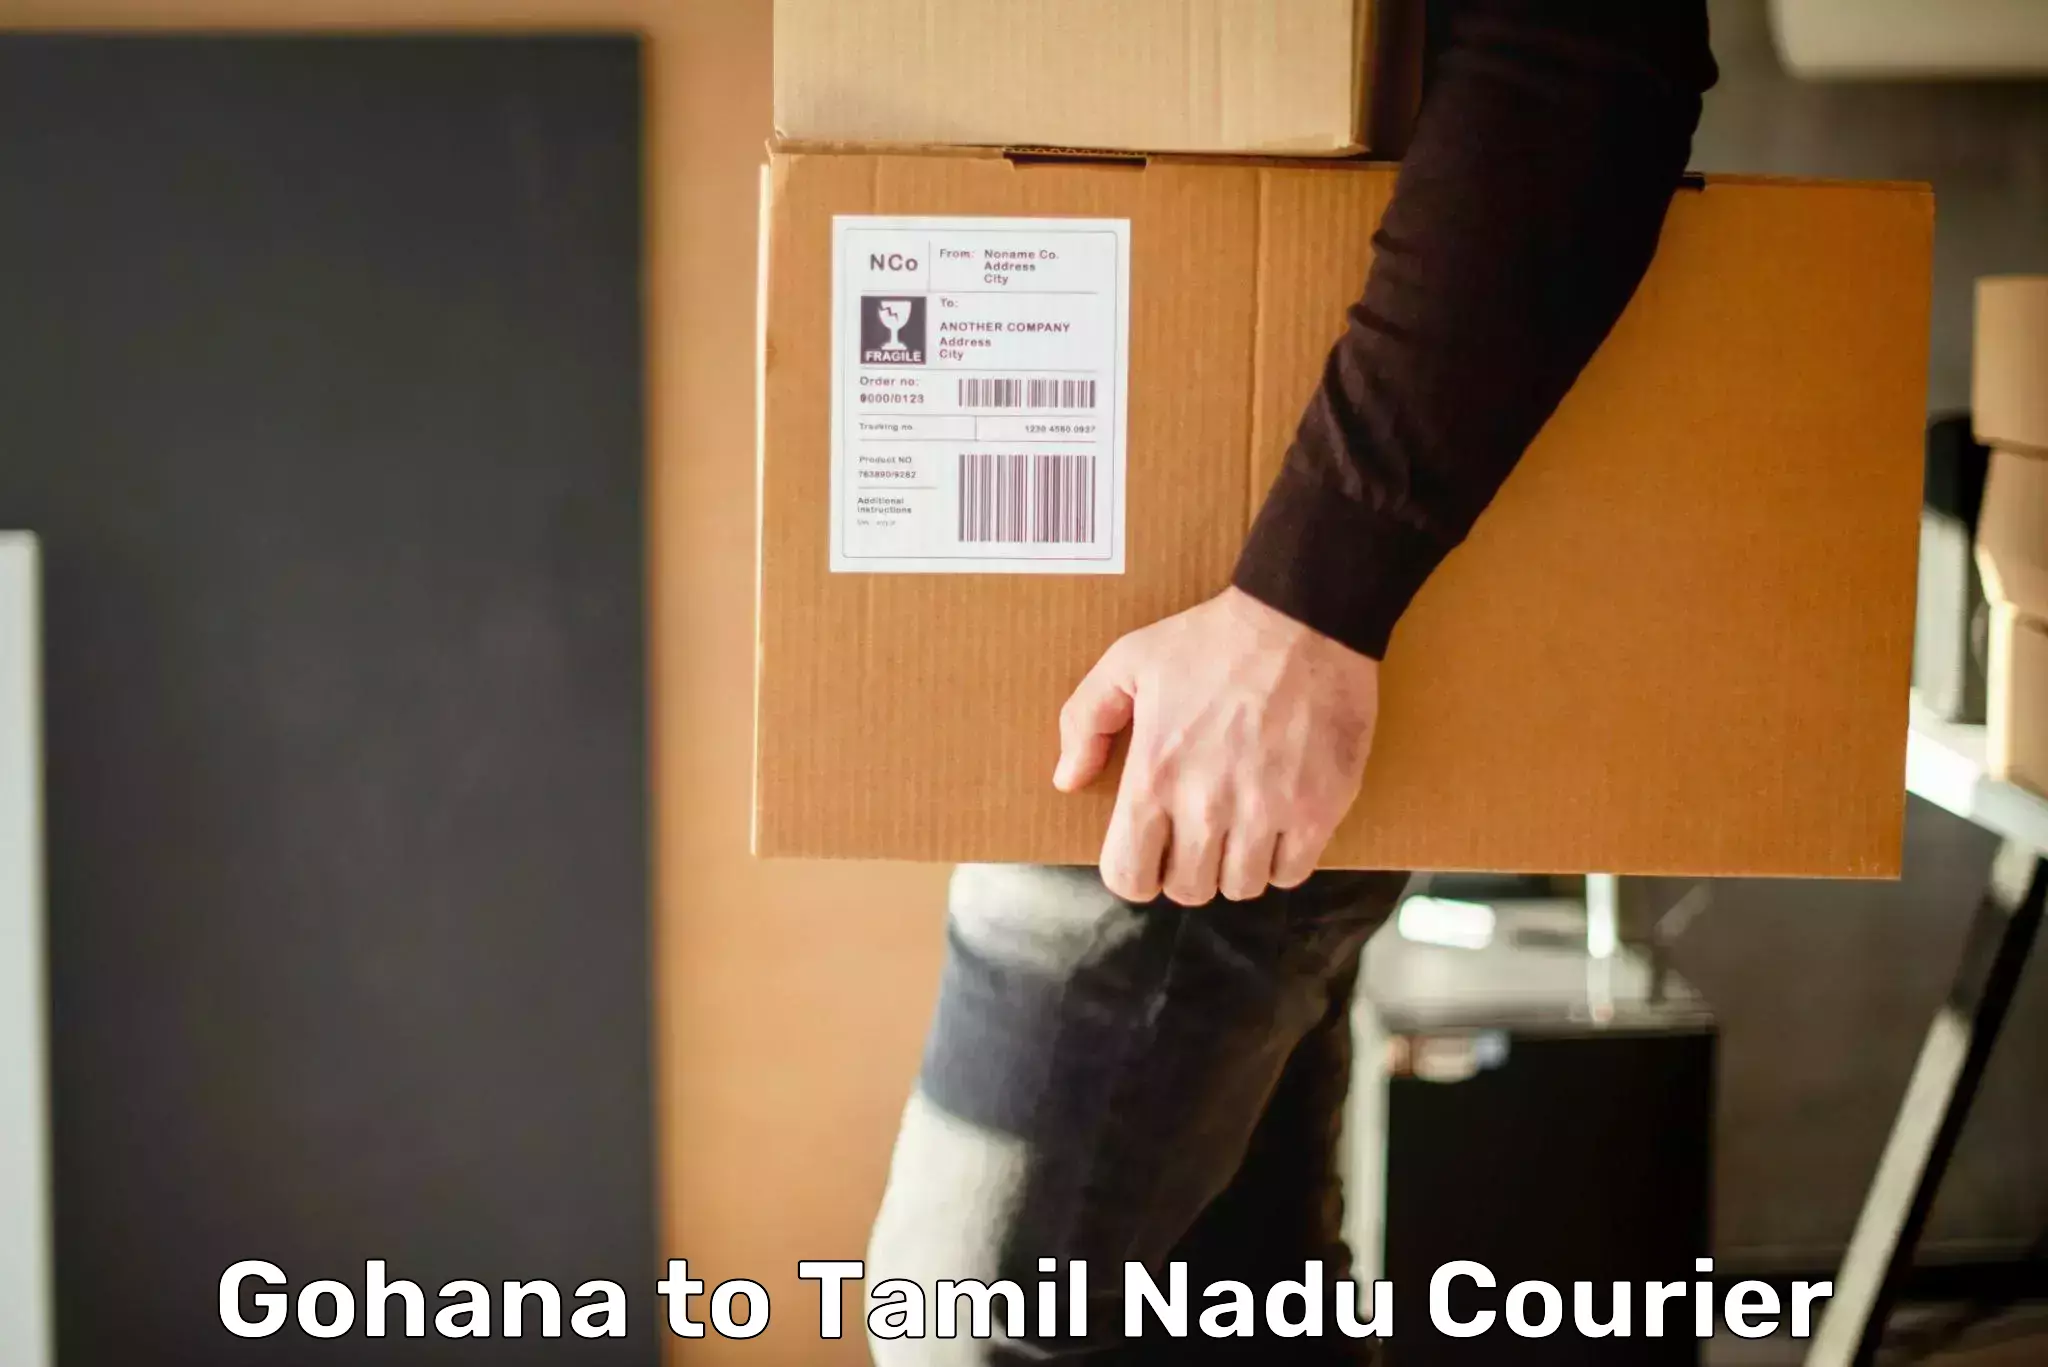 24-hour courier service Gohana to Erode